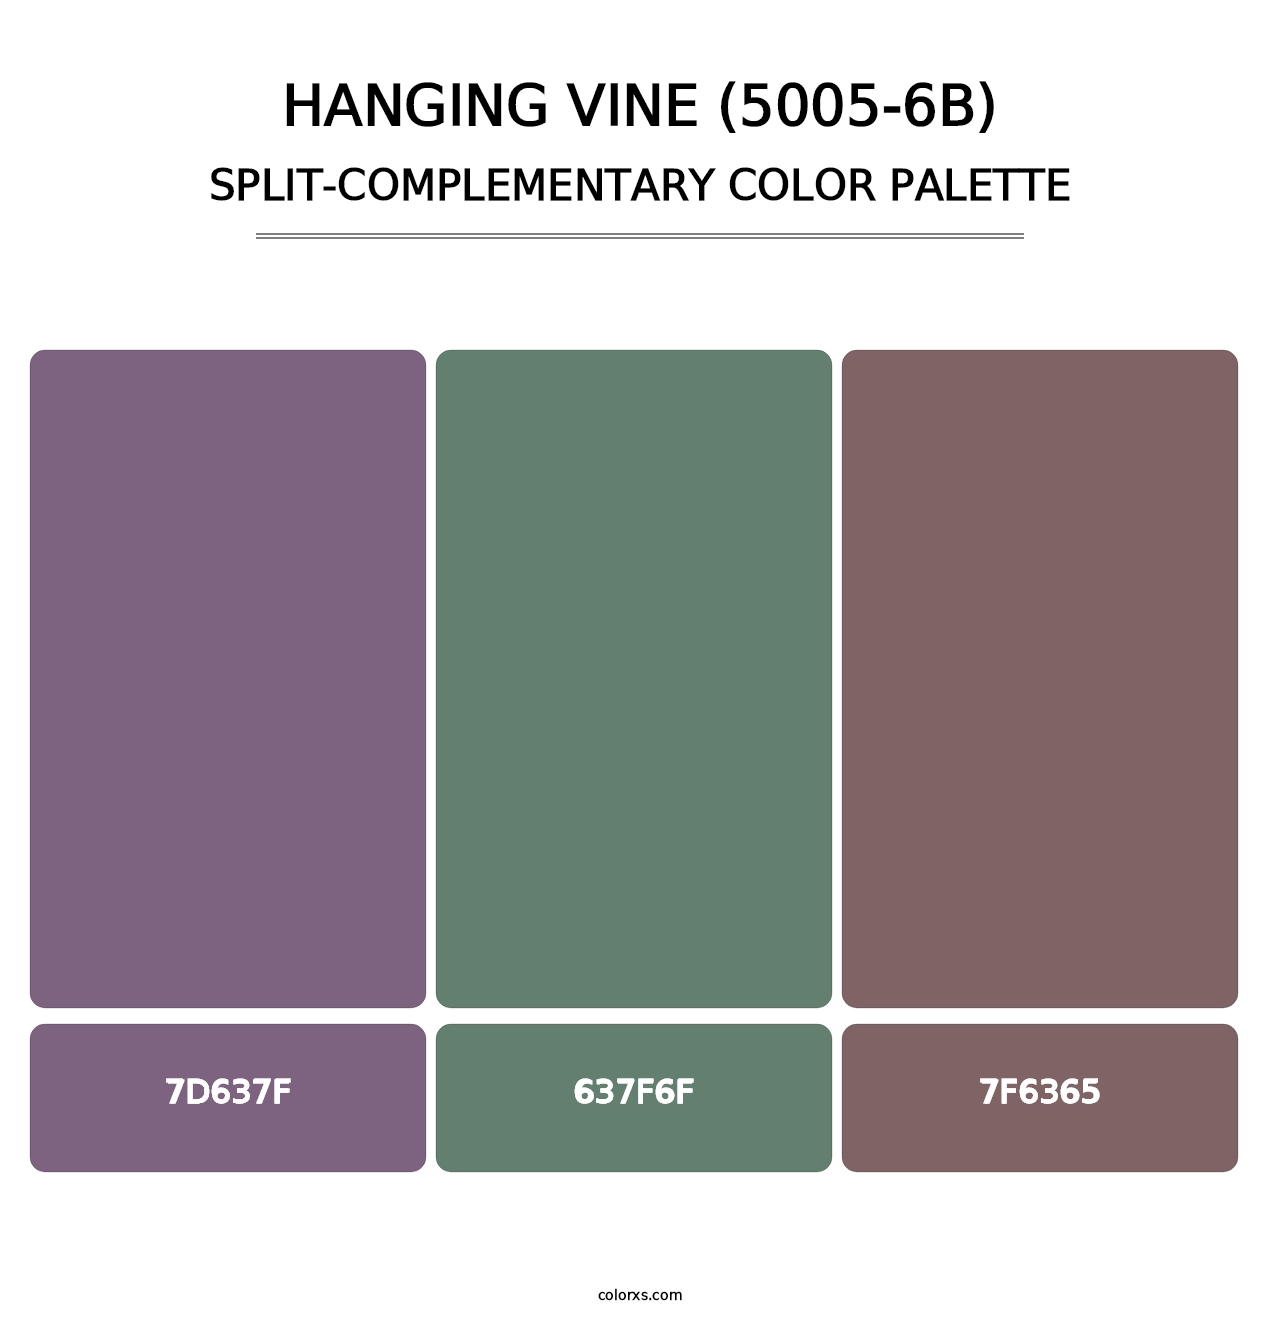 Hanging Vine (5005-6B) - Split-Complementary Color Palette